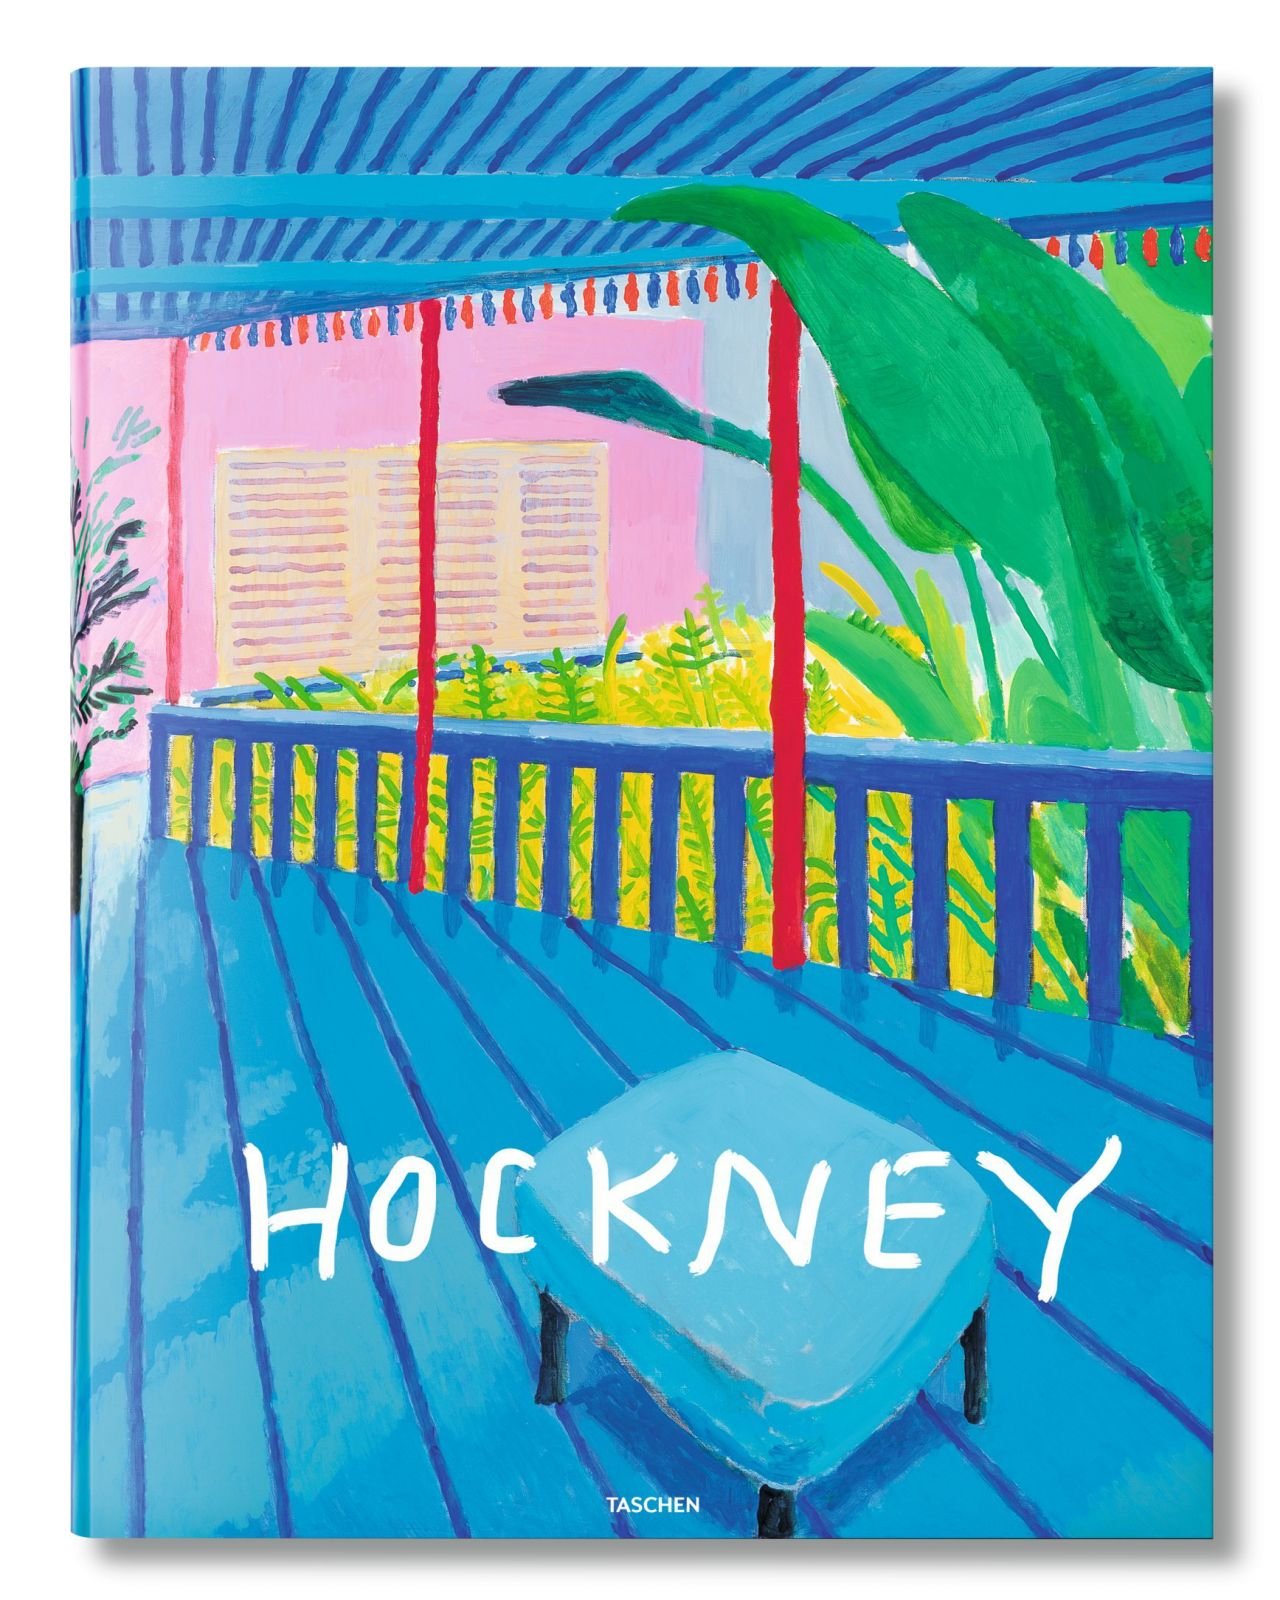 David Hockney. A Bigger Book